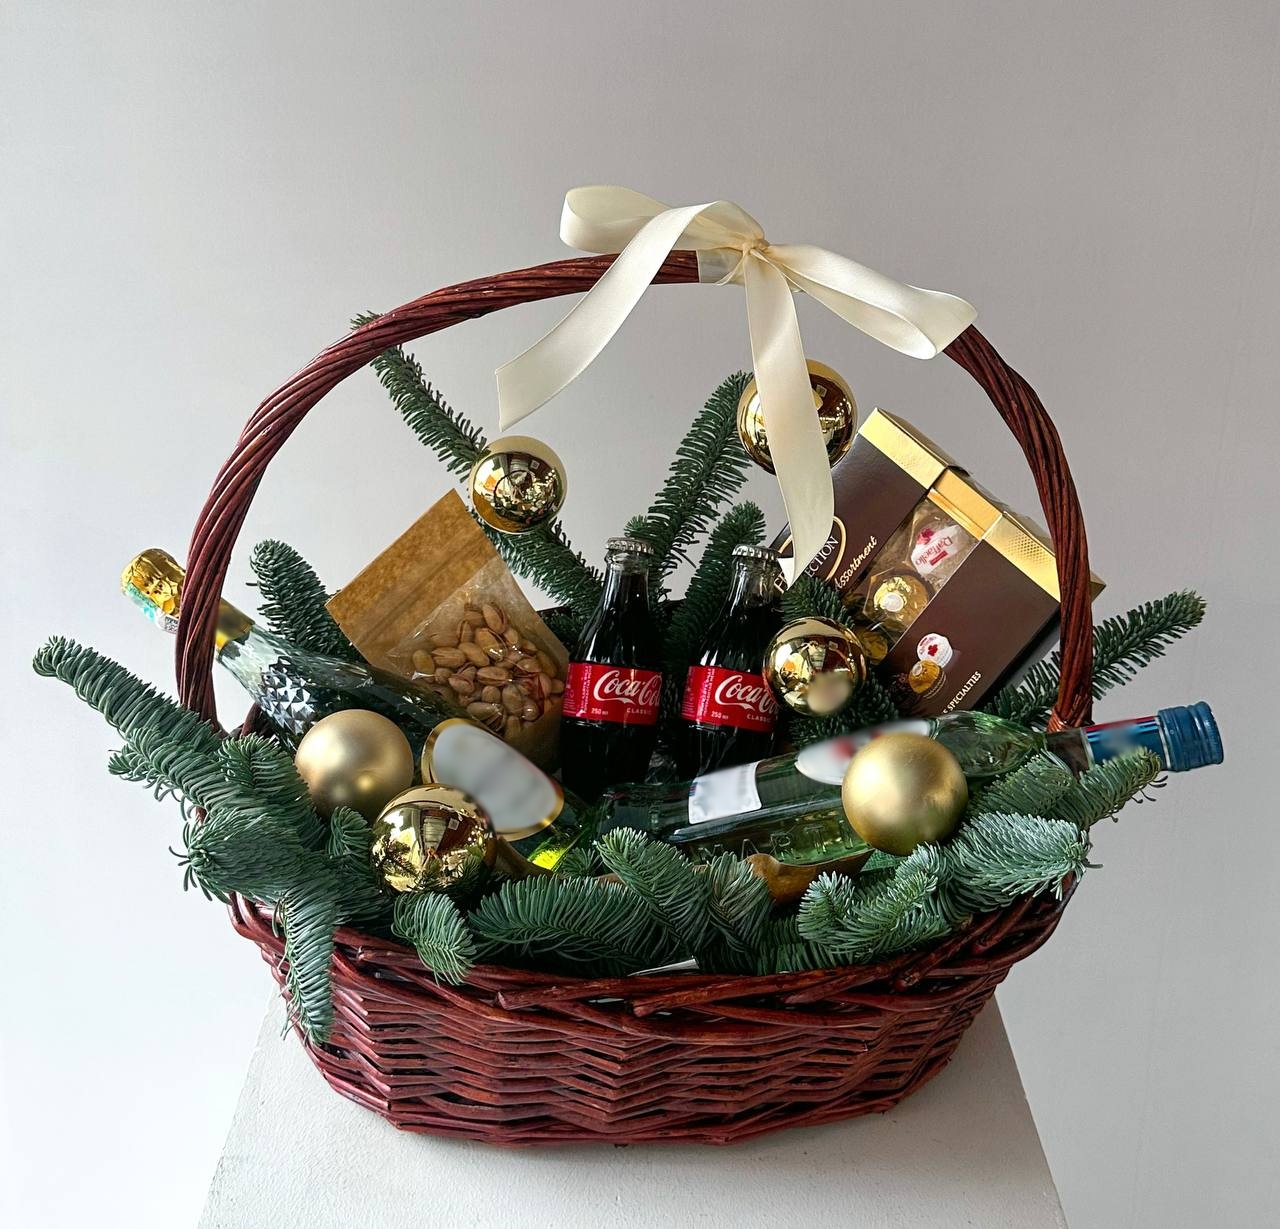 Новогодняя подарочная корзина "Candy Christmas" с нобилисом